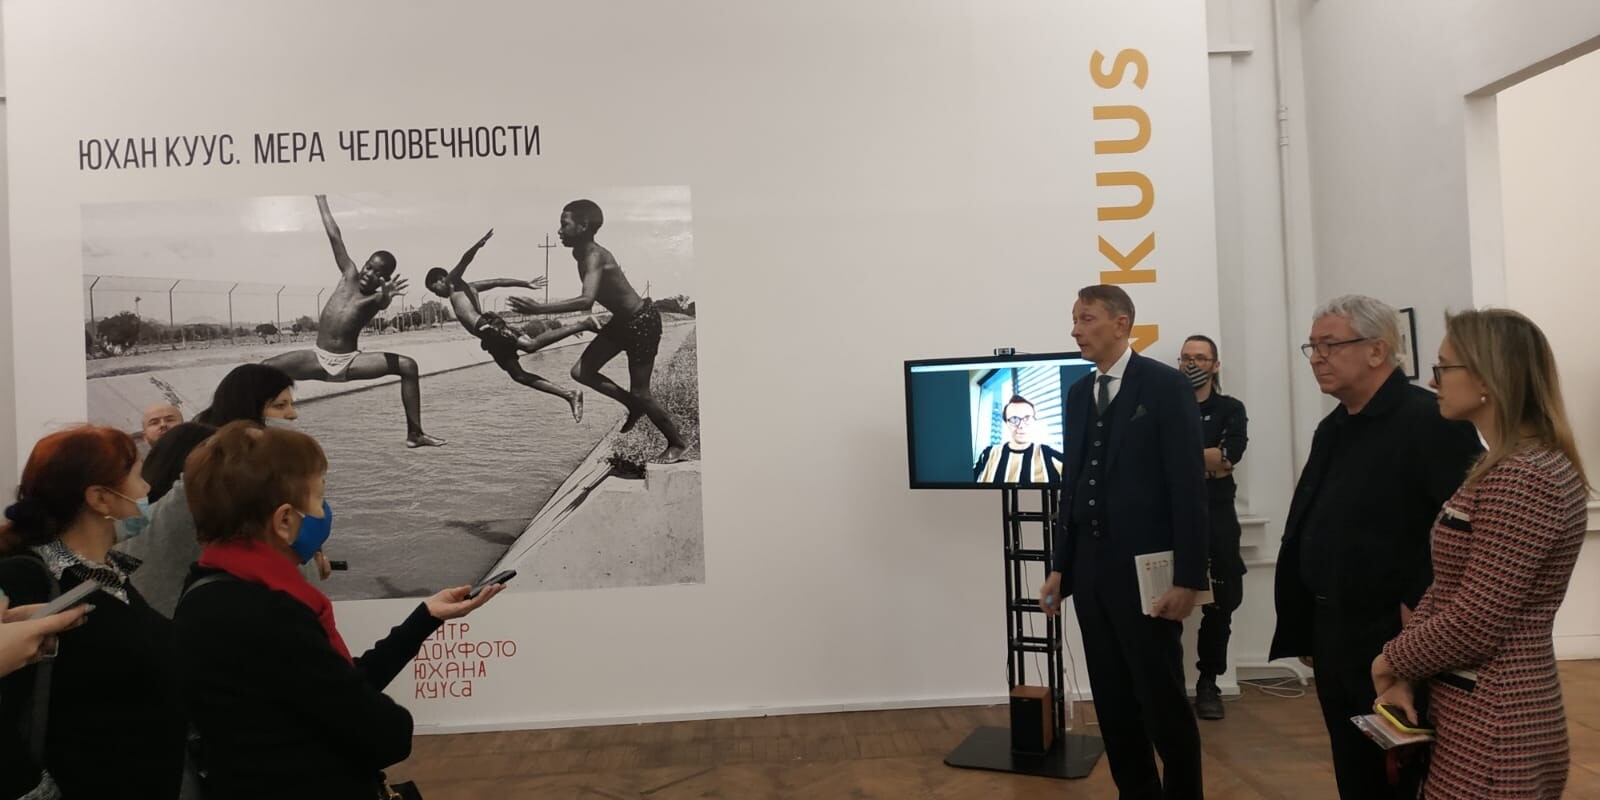 Фотографии южноафриканского апартеида, созданные эстонским документалистом, покажут в Петербурге